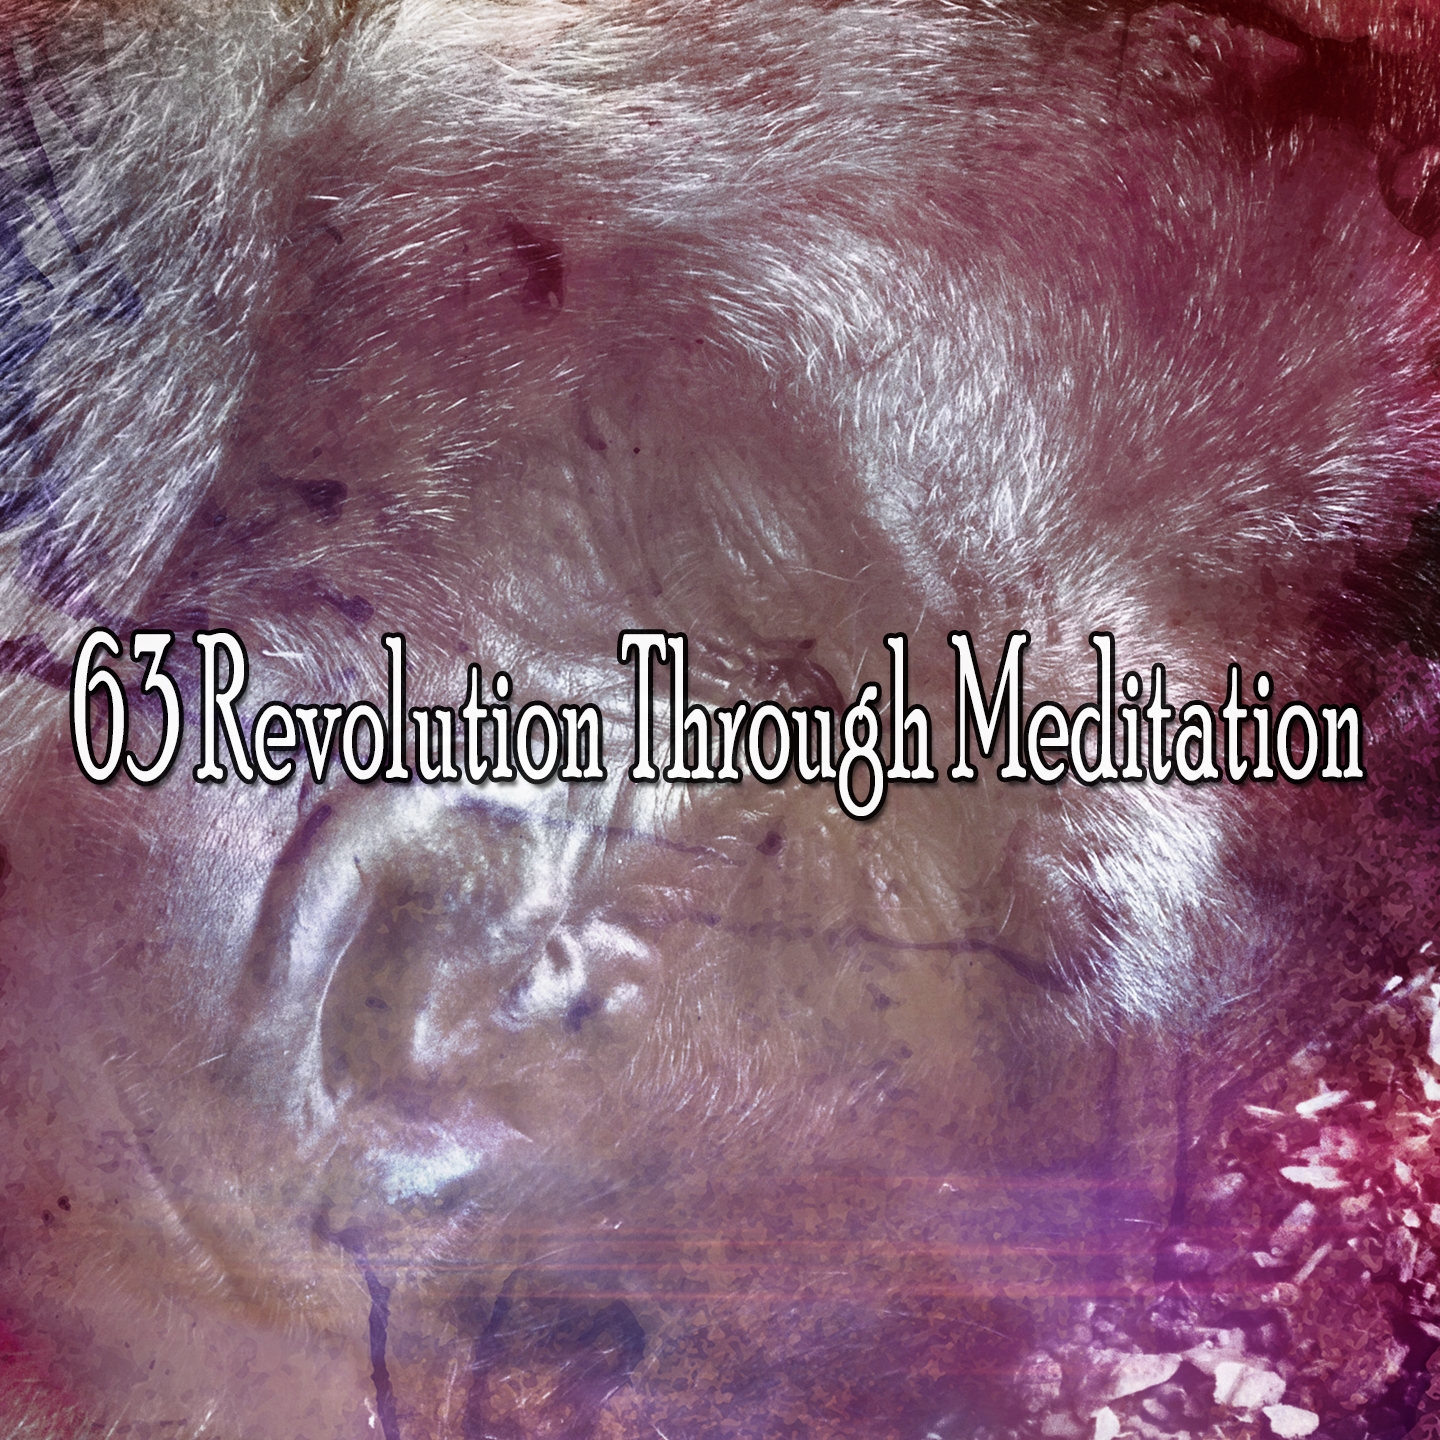 63 Revolution Through Meditation